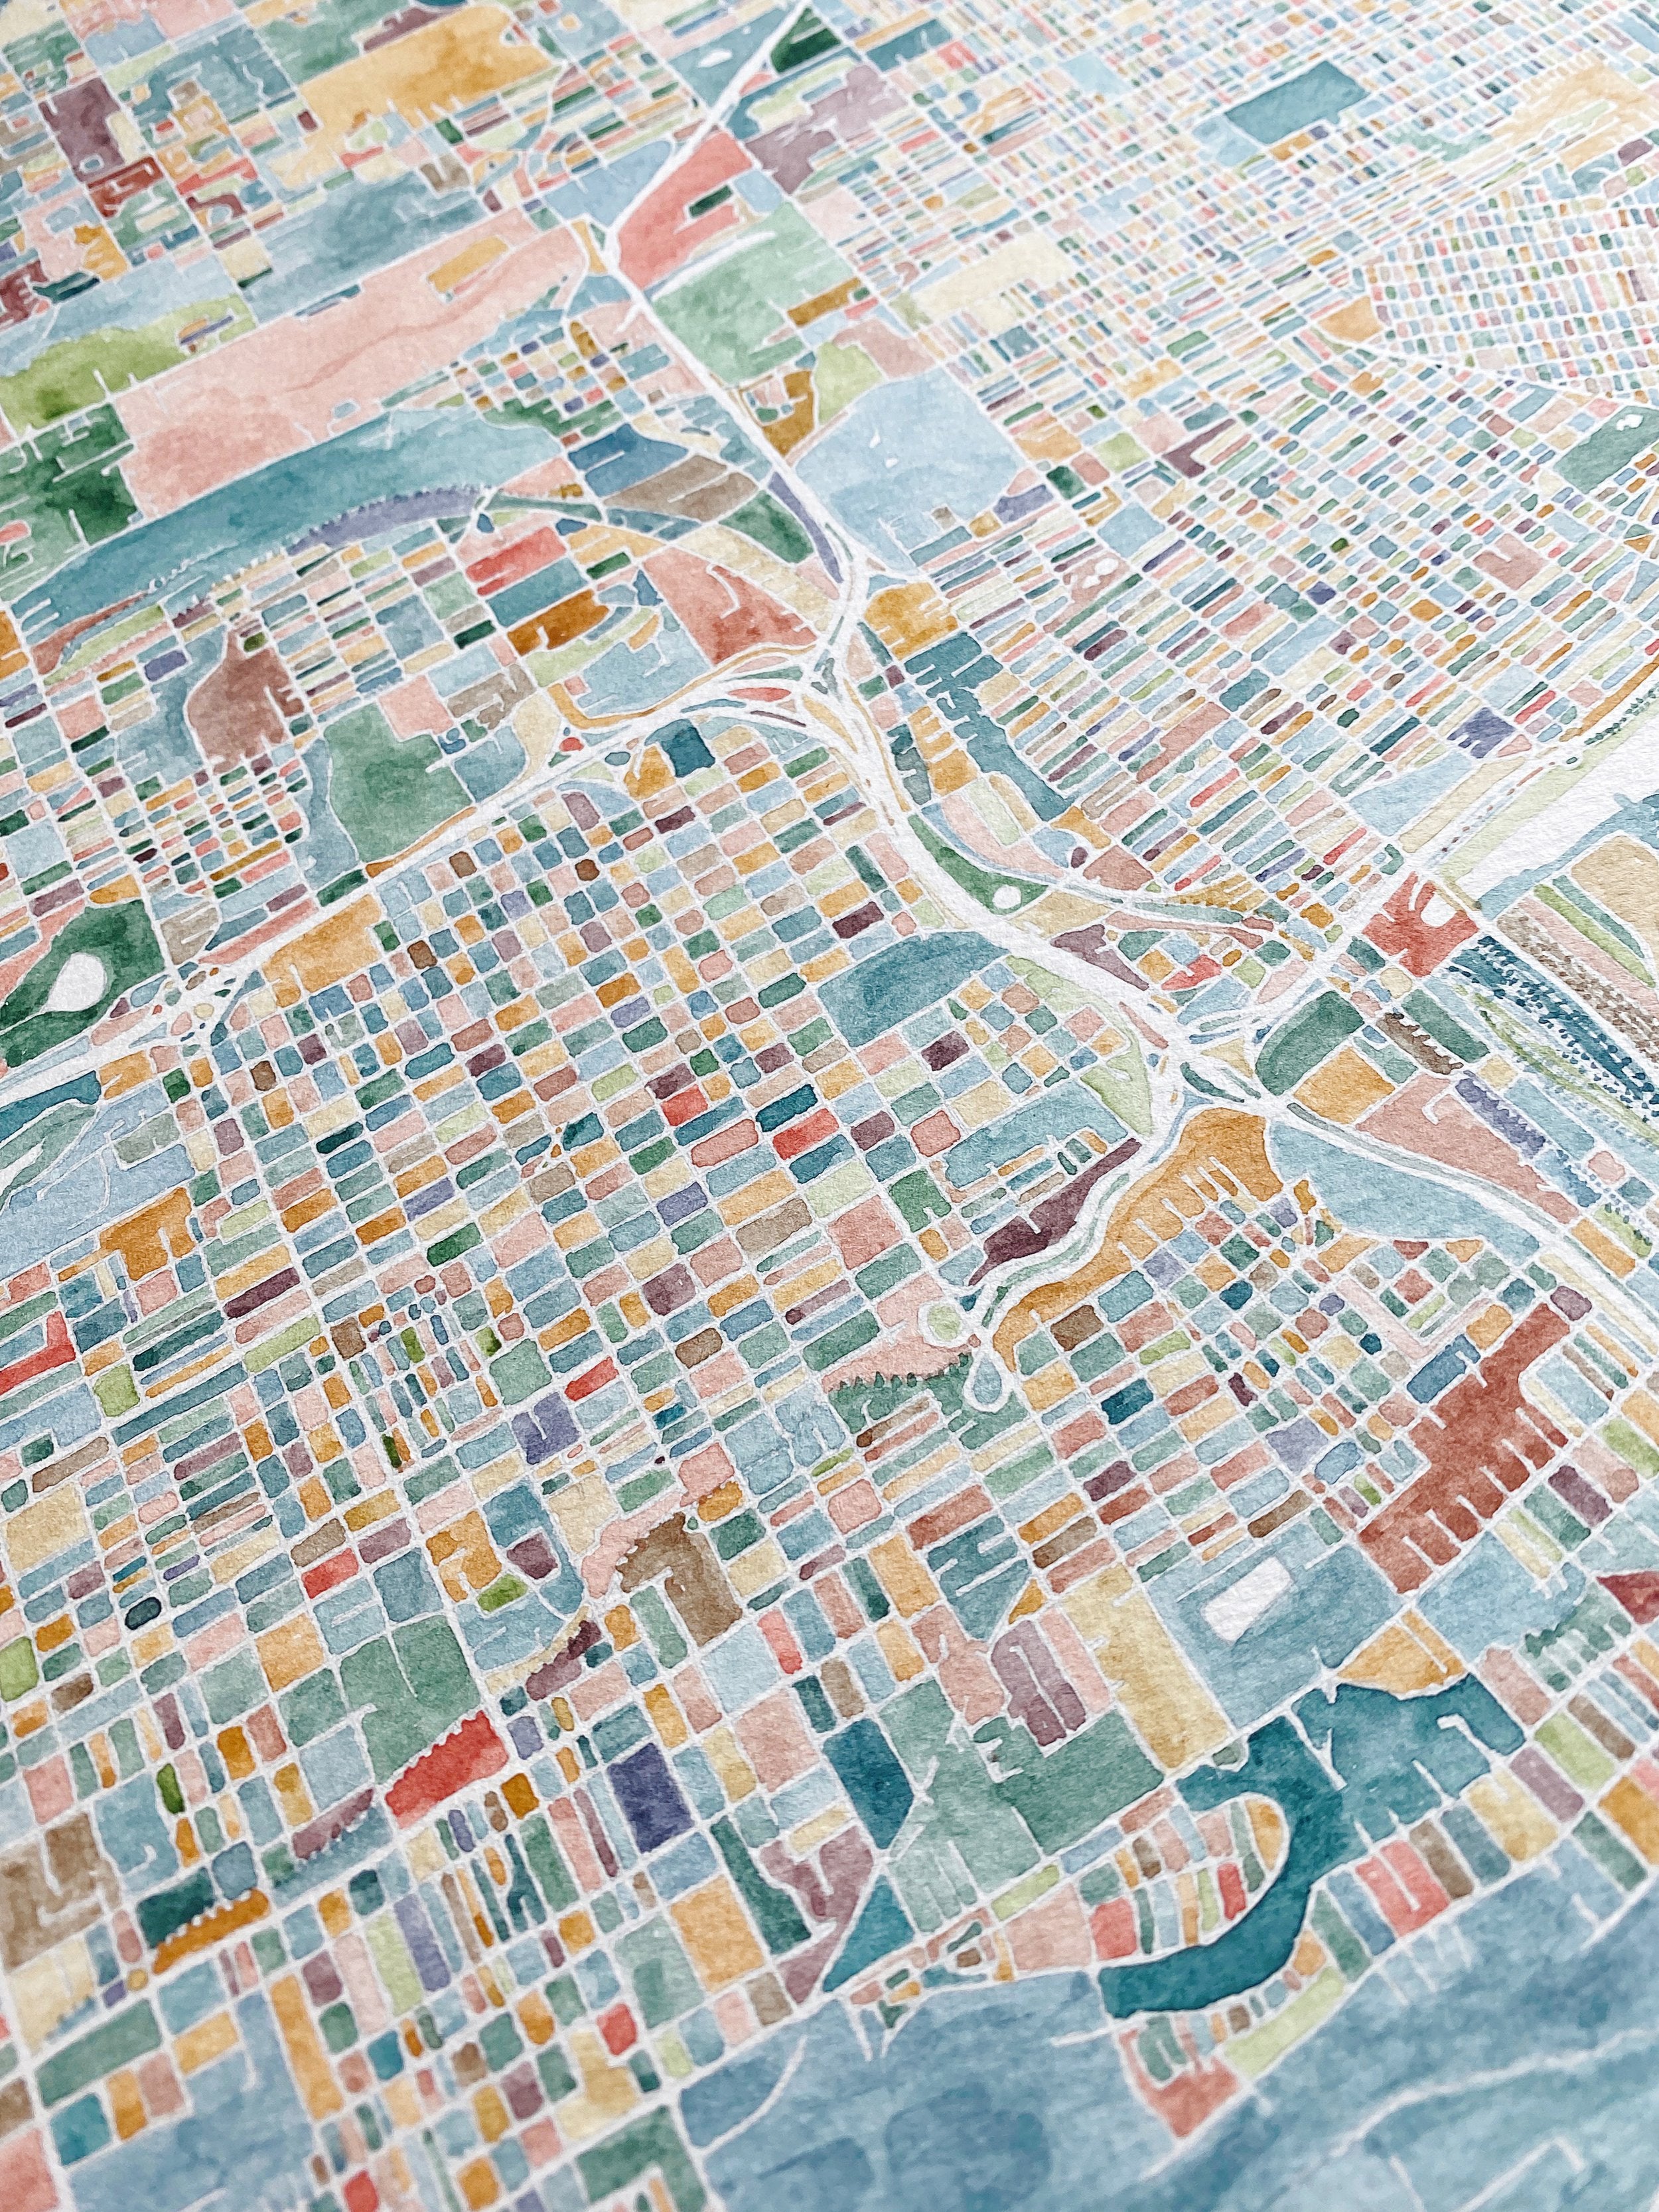 ColorFULL TACOMA Watercolor City Blocks Map: PRINT